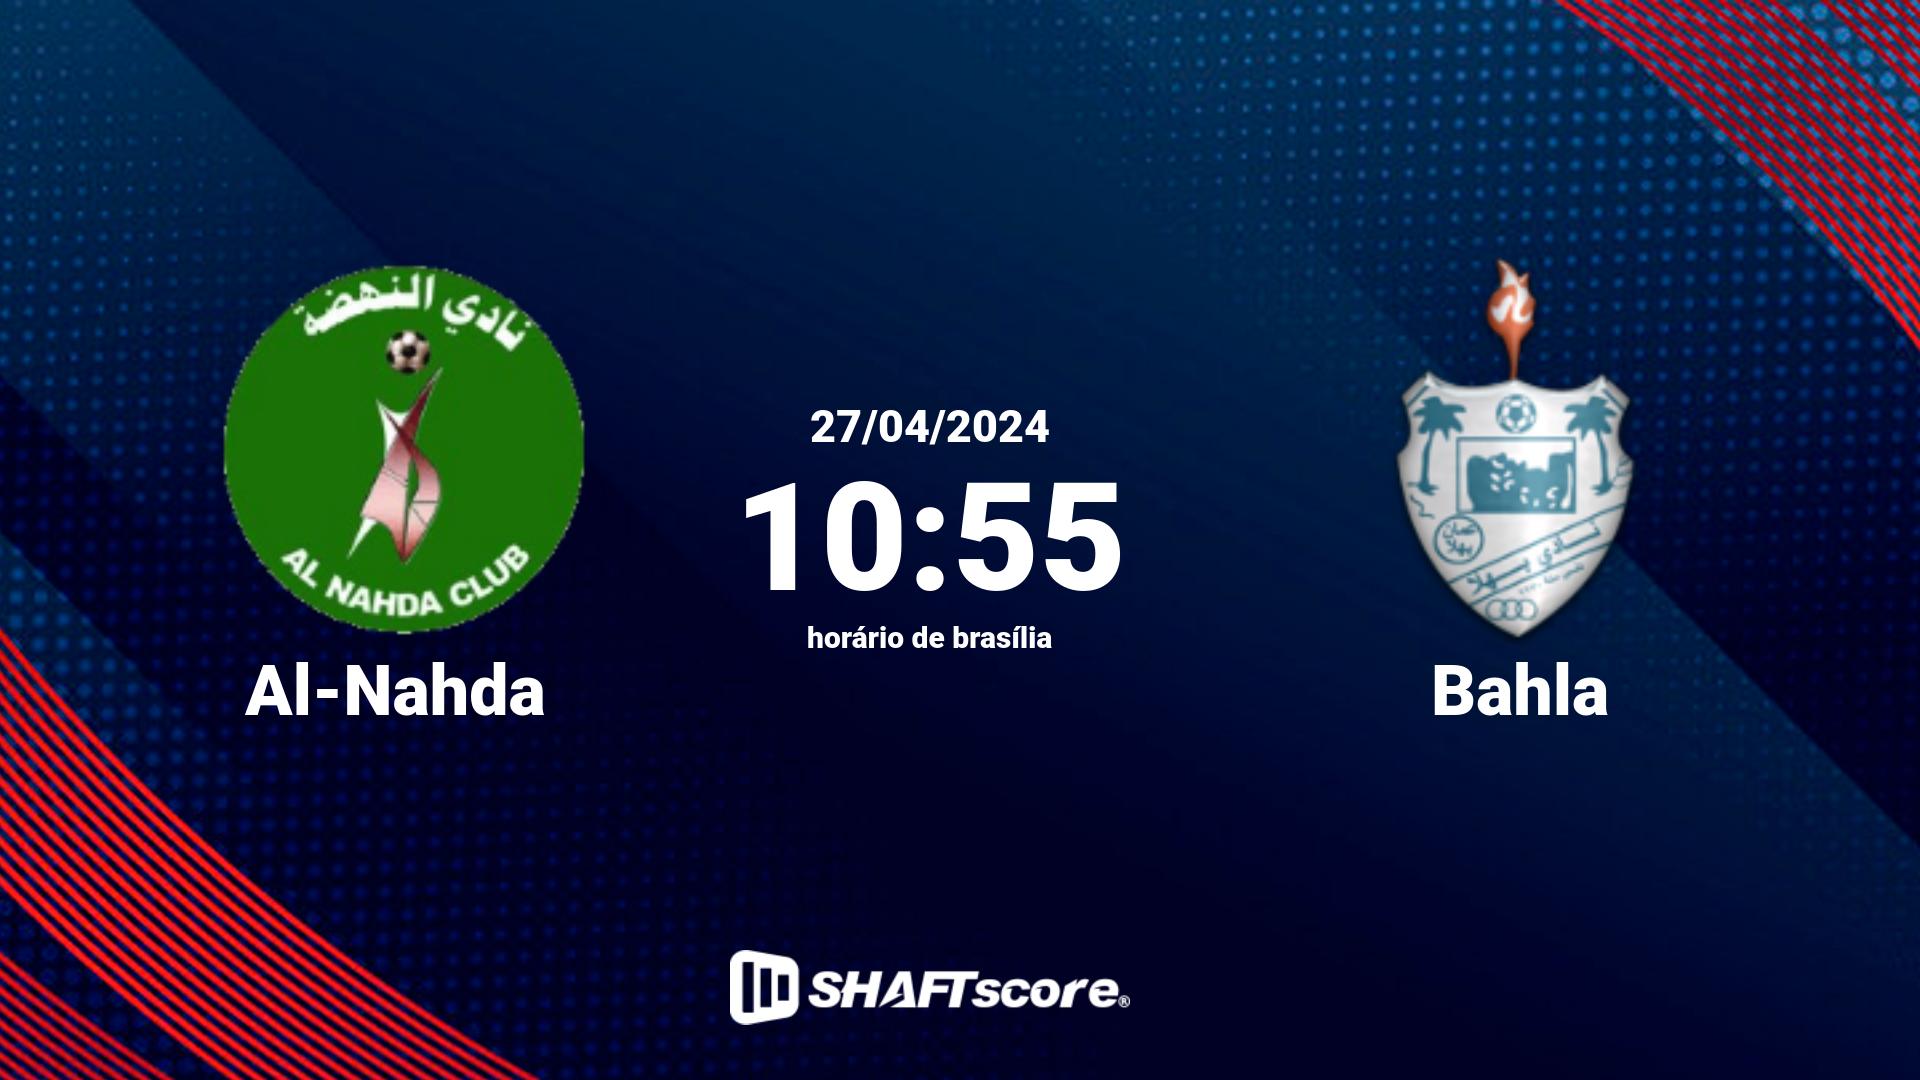 Estatísticas do jogo Al-Nahda vs Bahla 27.04 10:55